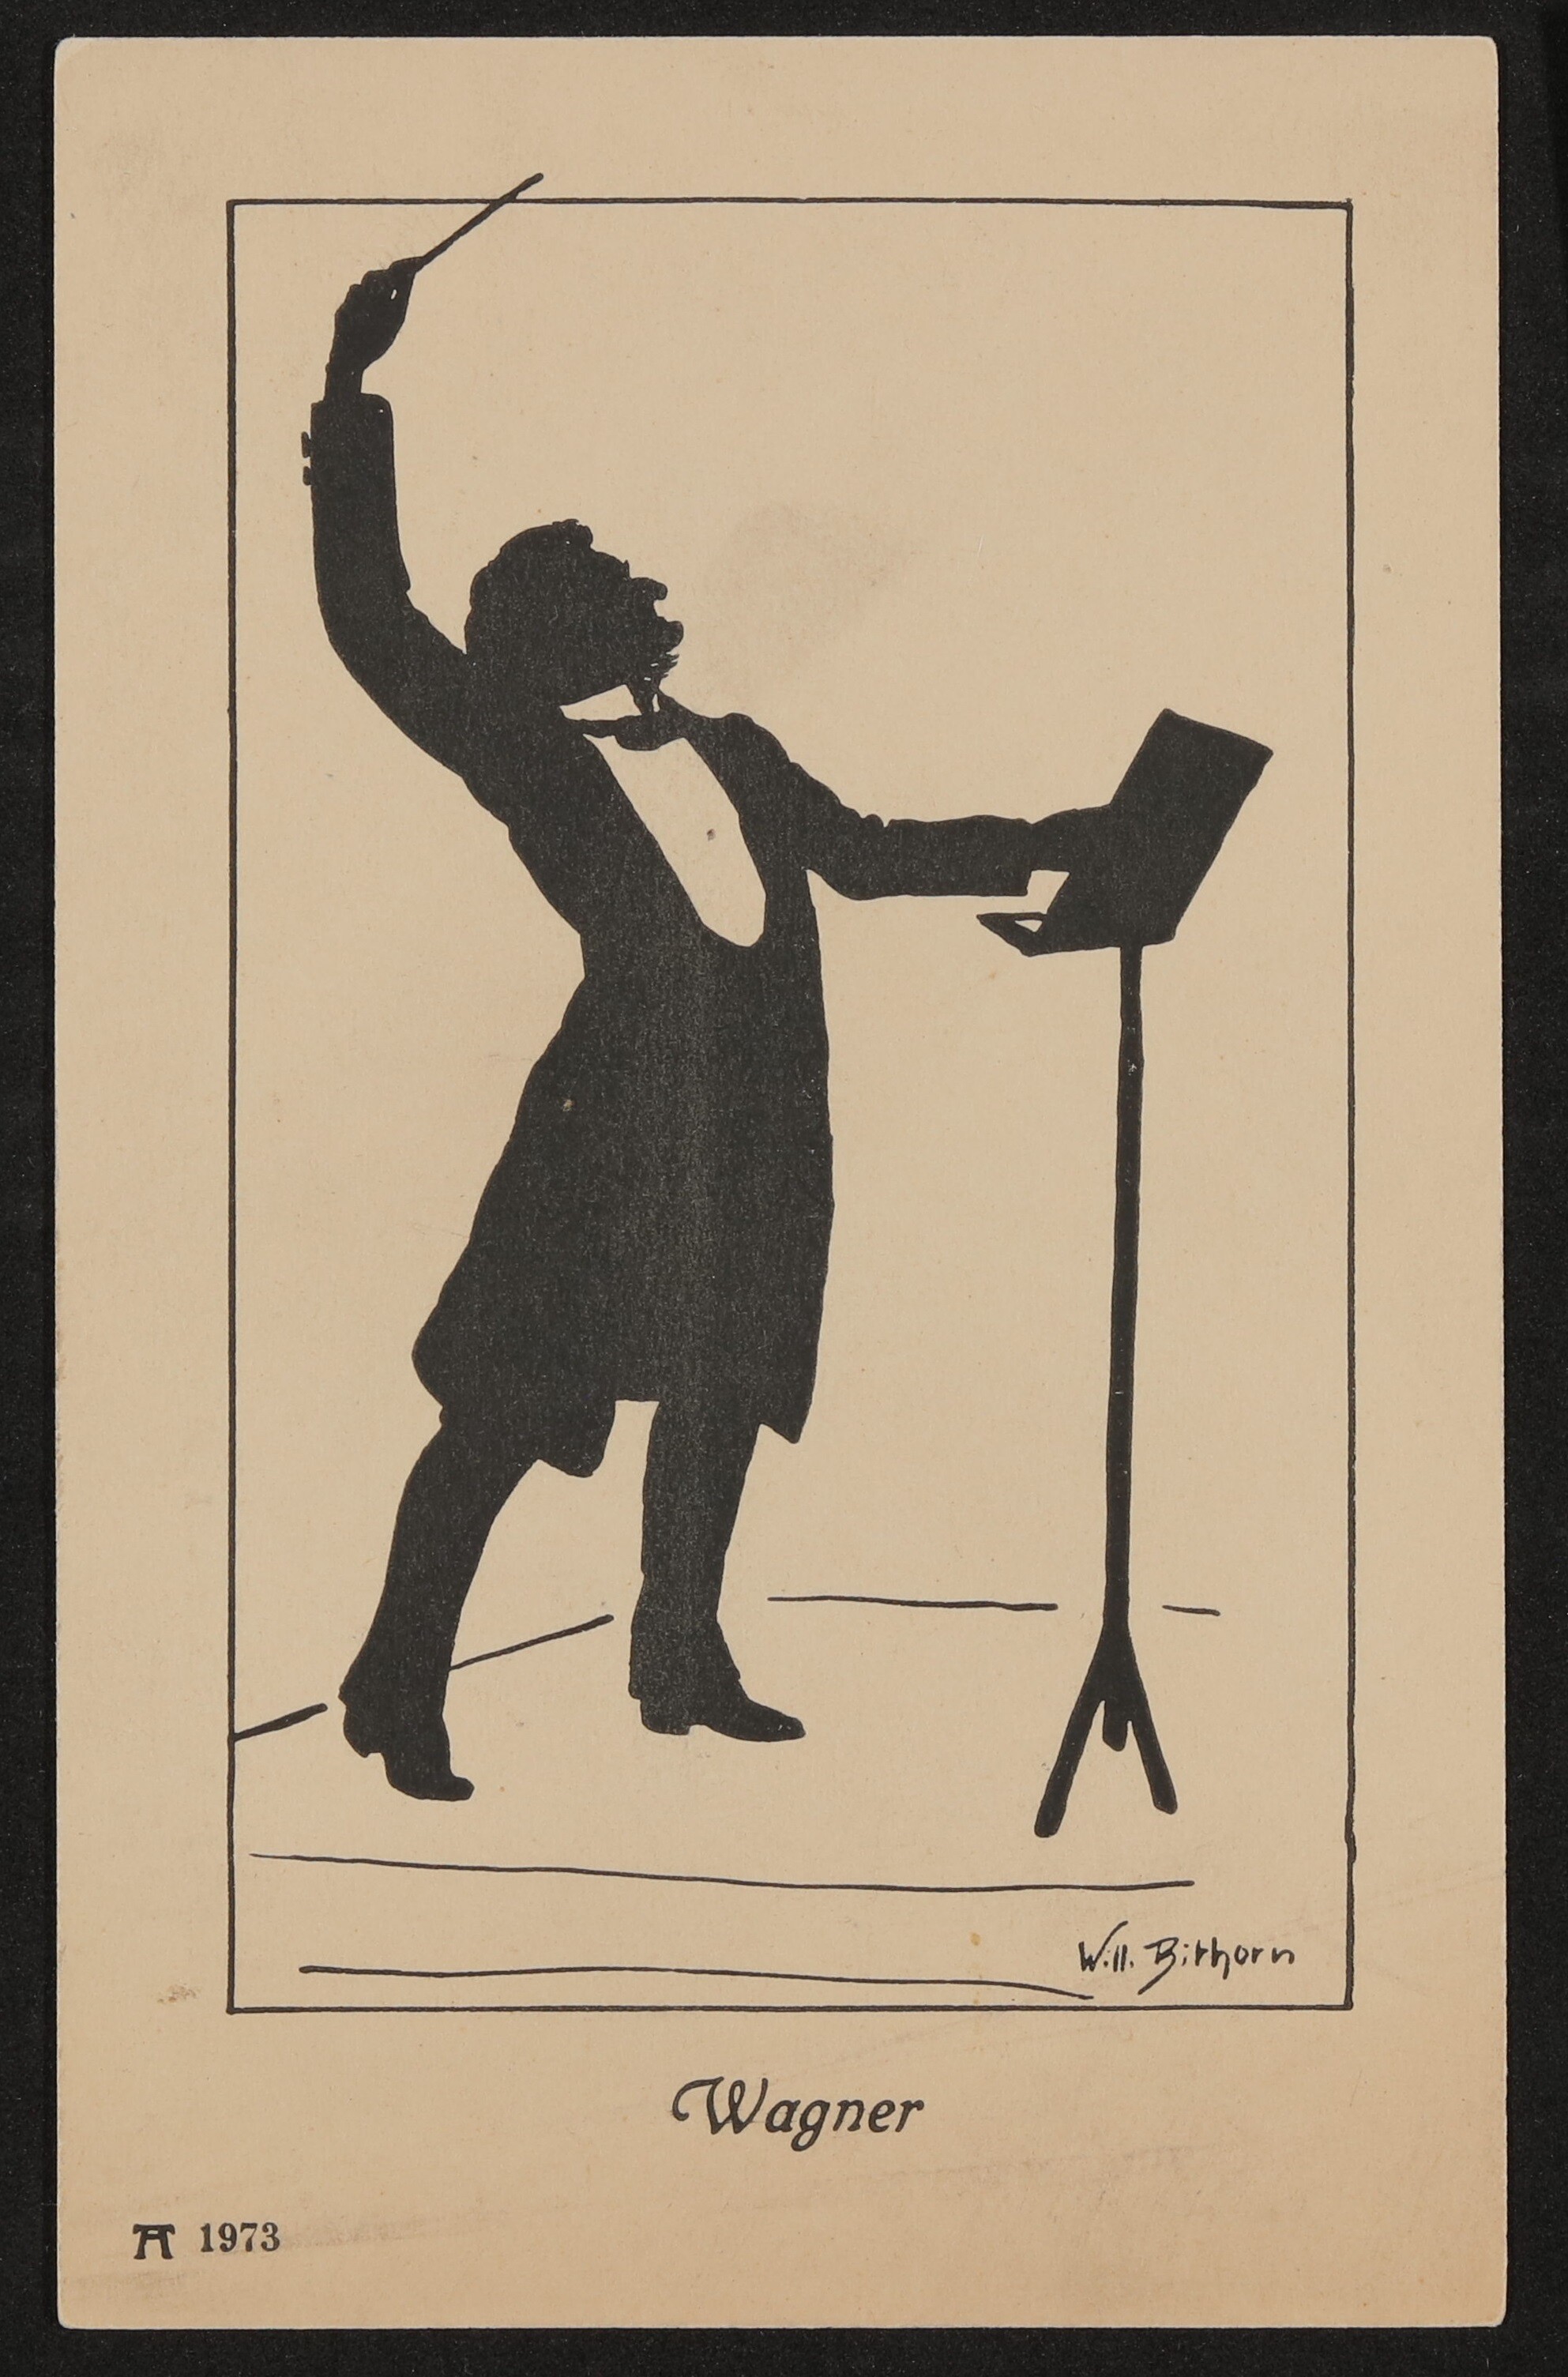 Ansichtskarte mit Silhouette von Willy Bithorn: Richard Wagner am Dirigentenpult (Freies Deutsches Hochstift / Frankfurter Goethe-Museum CC BY-NC-SA)